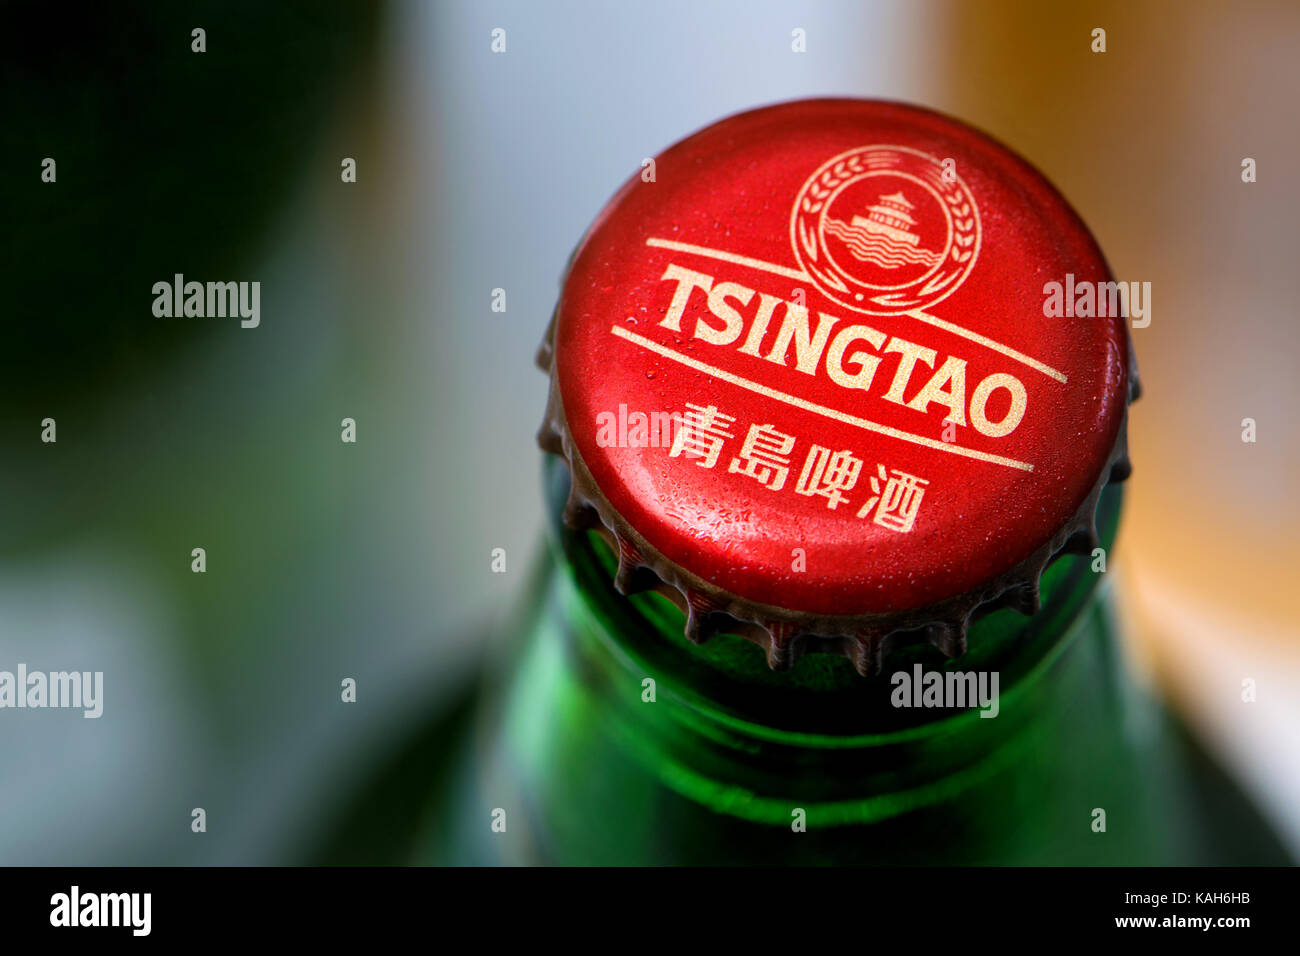 Bouteille de bière et le cap - Tsingtao lager japonais Banque D'Images